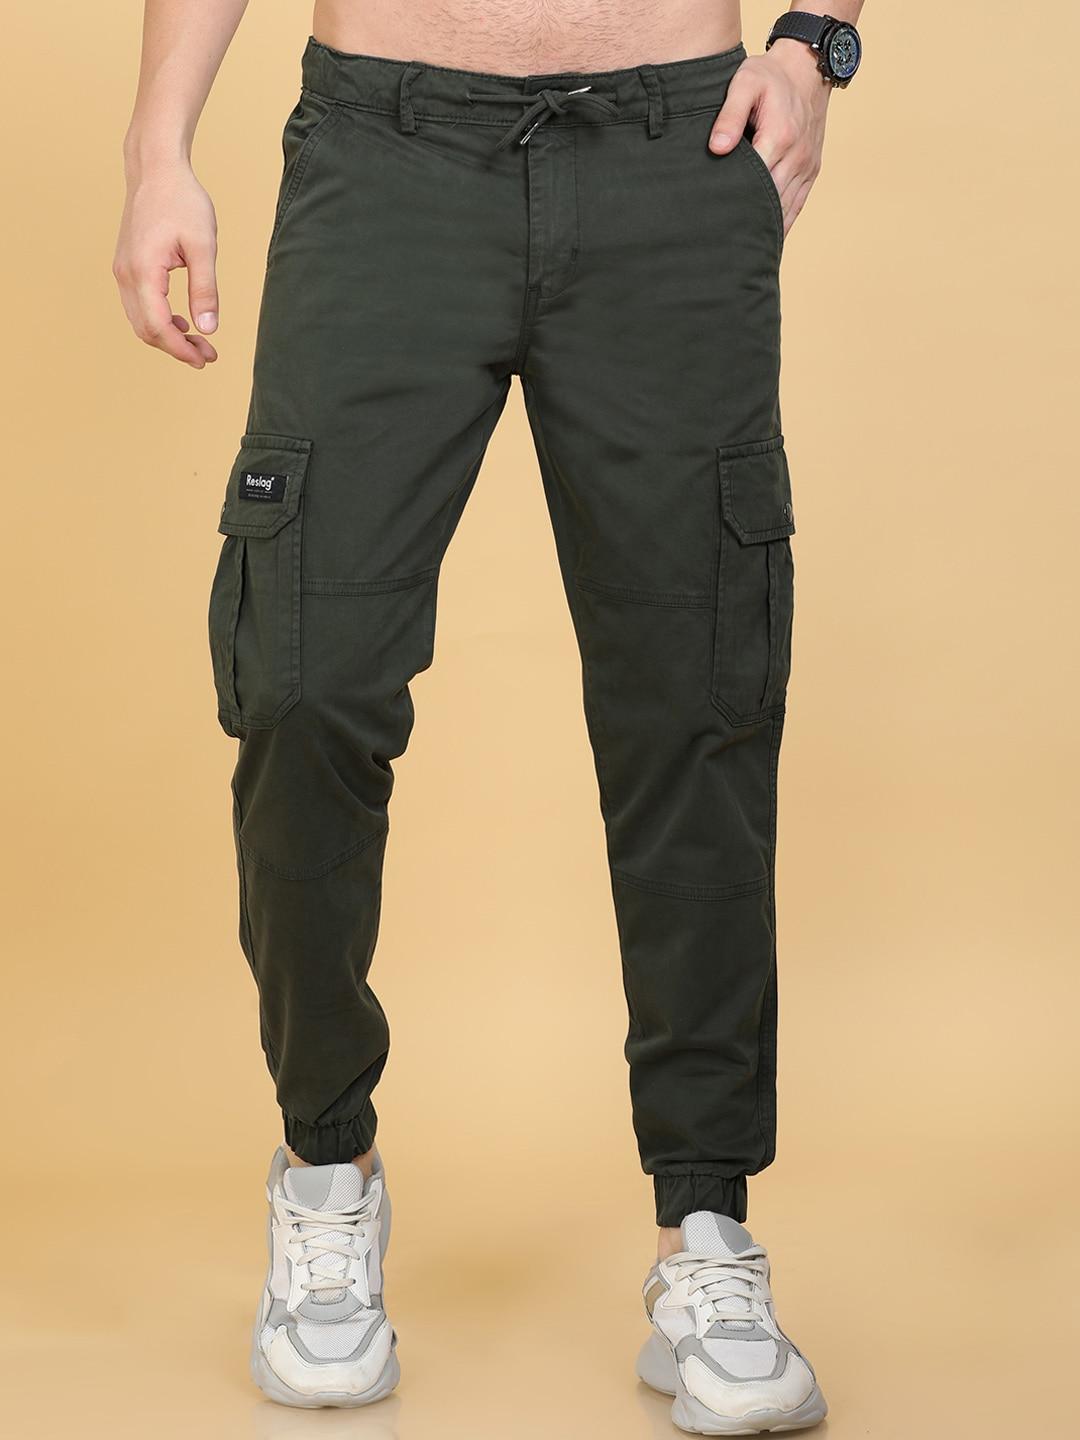 reslag-men-mid-rise-cotton-joggers-trousers